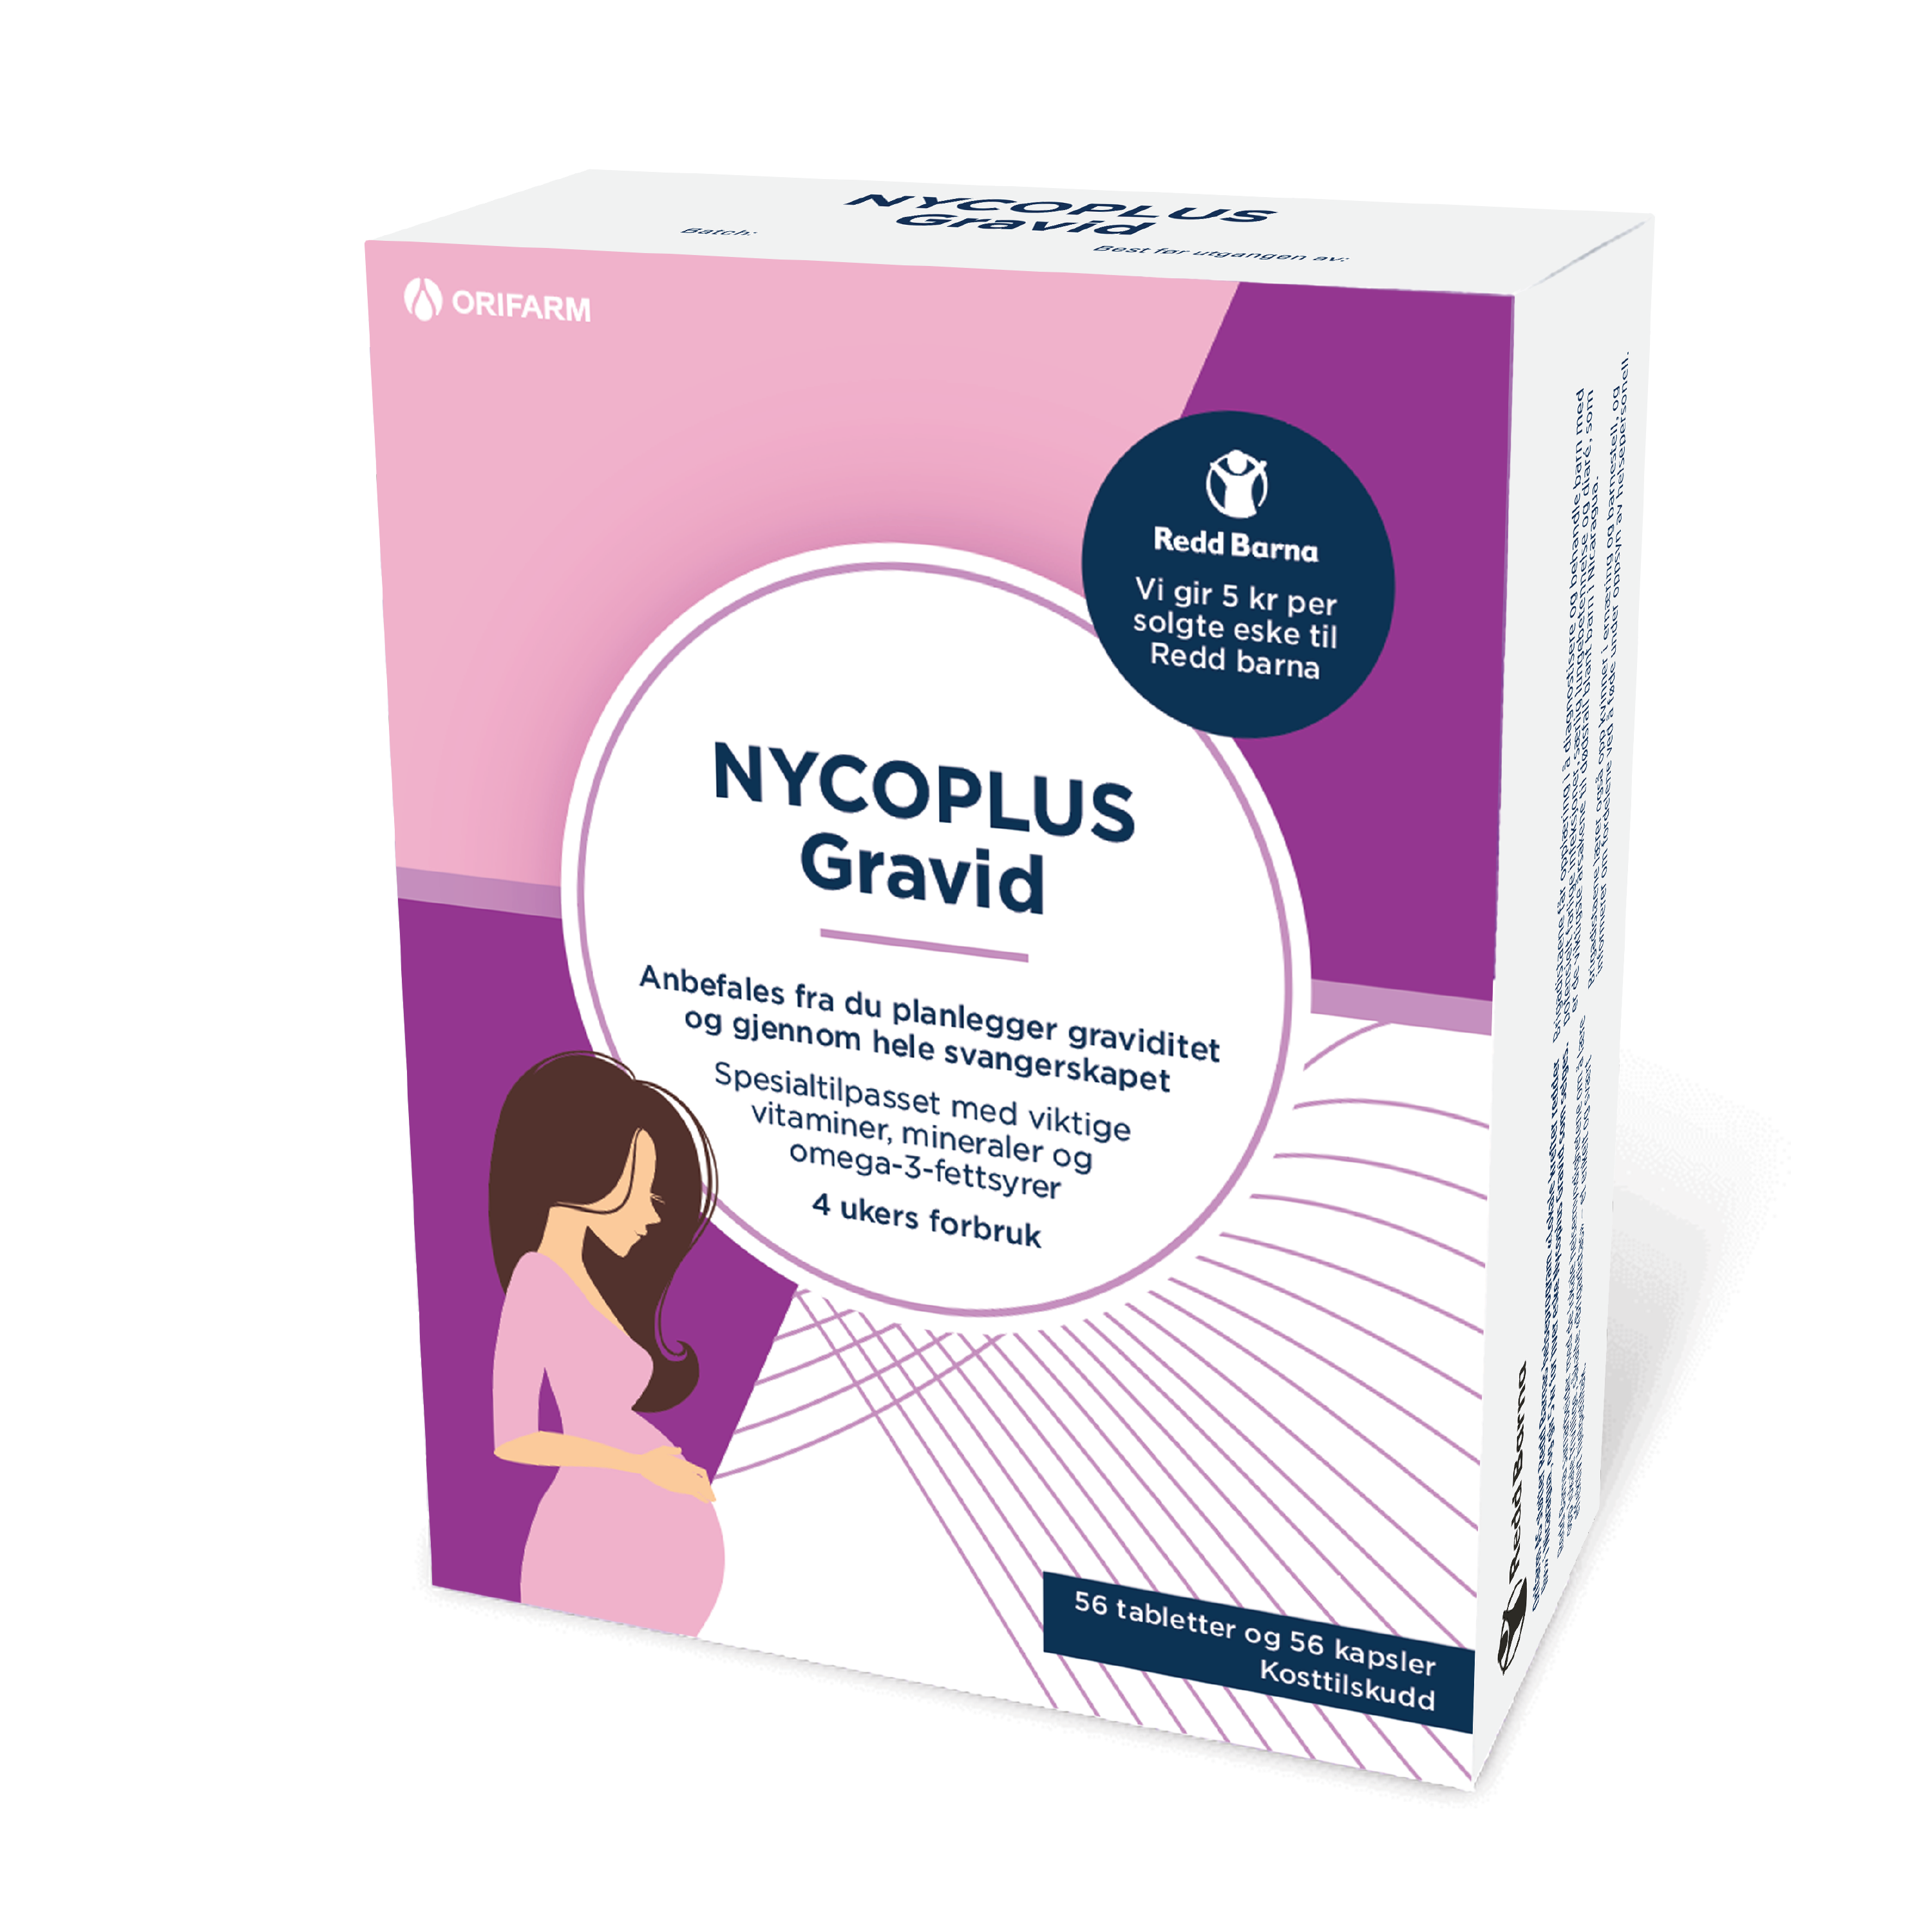 Nycoplus Gravid Tabletter + Kapsler, 56+56 tabletter